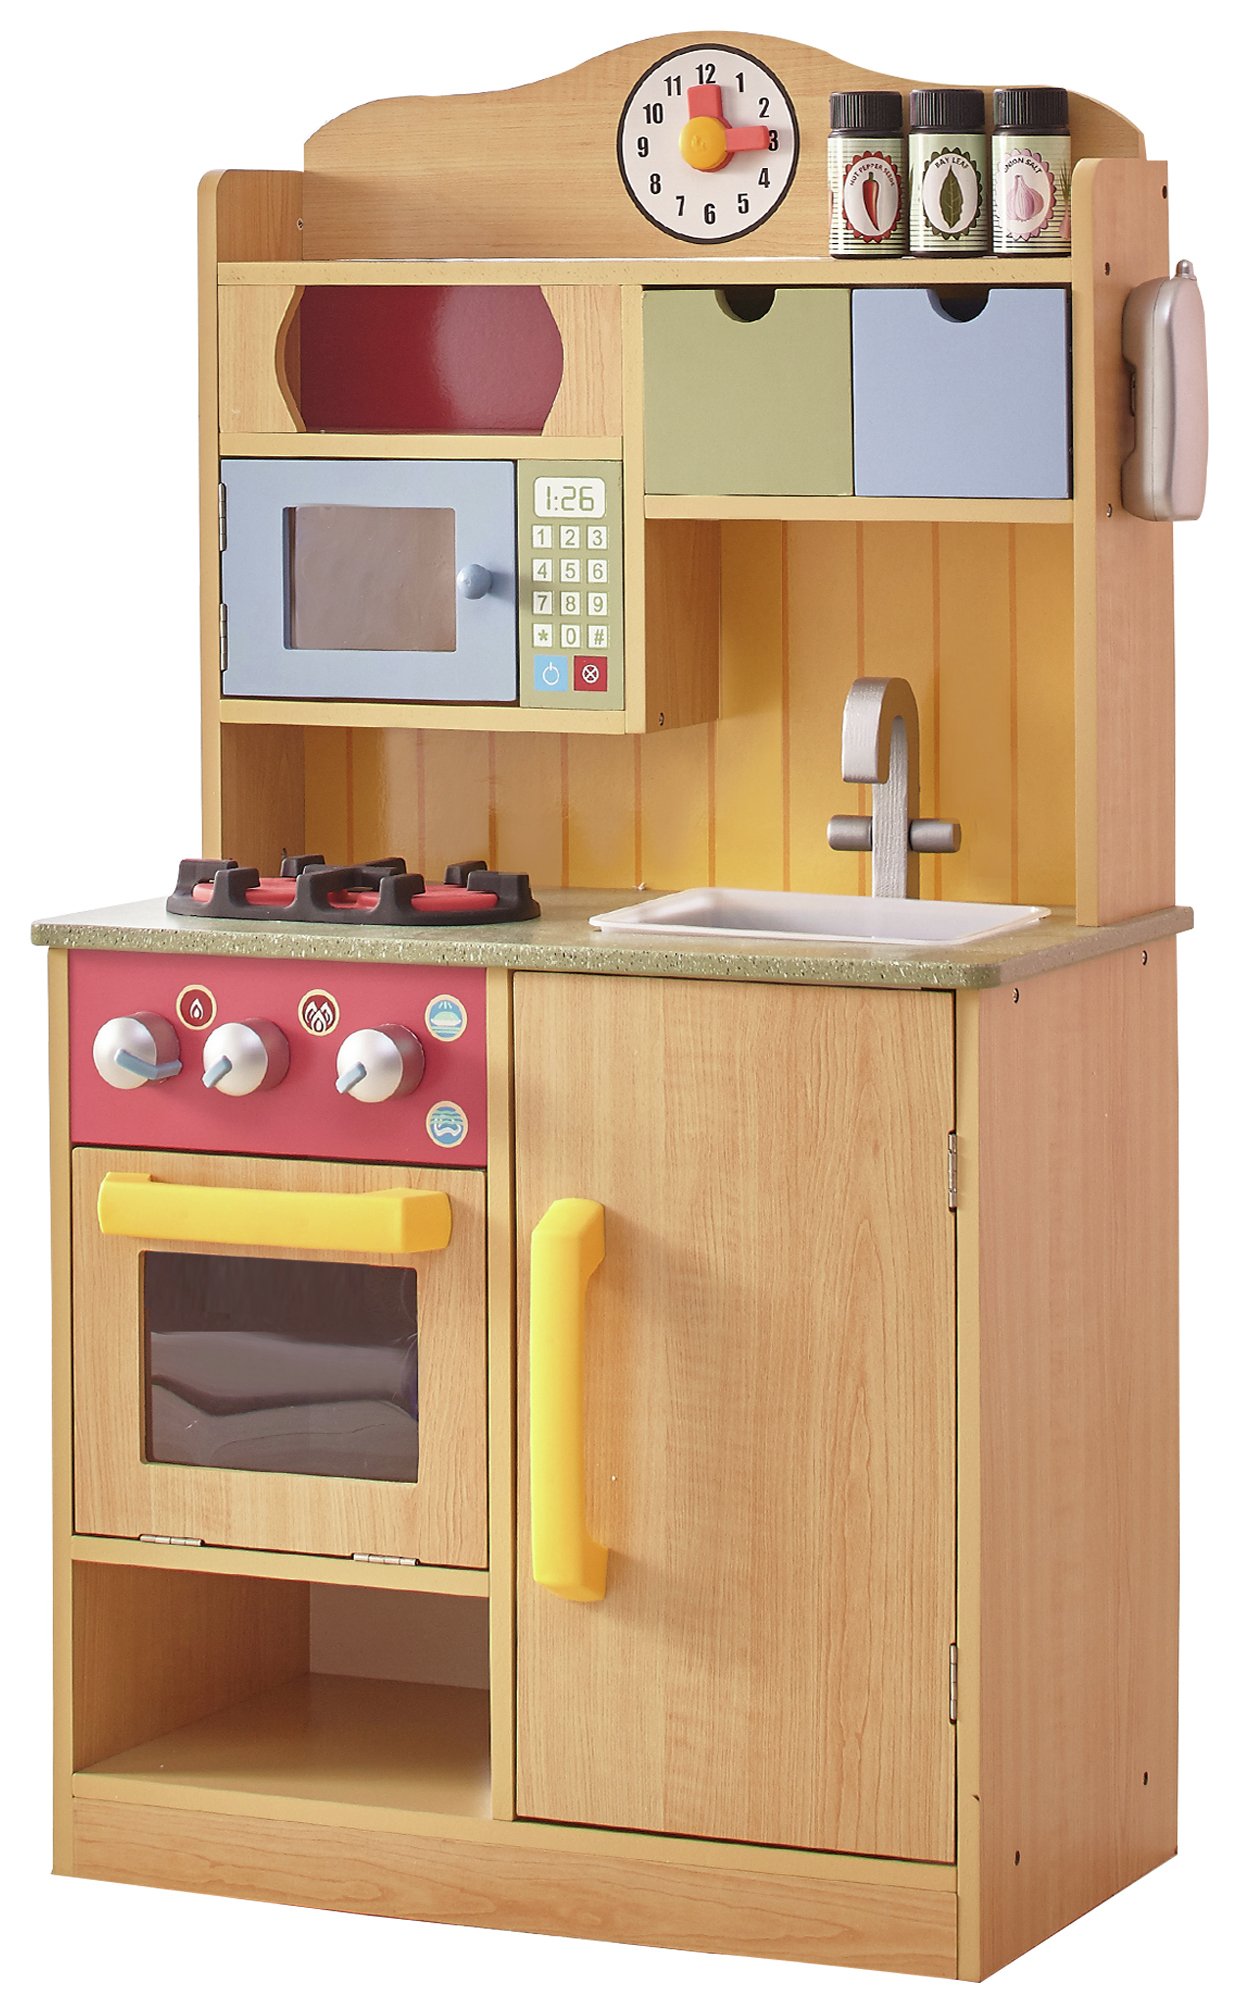 Argos Toy Kitchen Accessories Off 56 Sietelecom Com